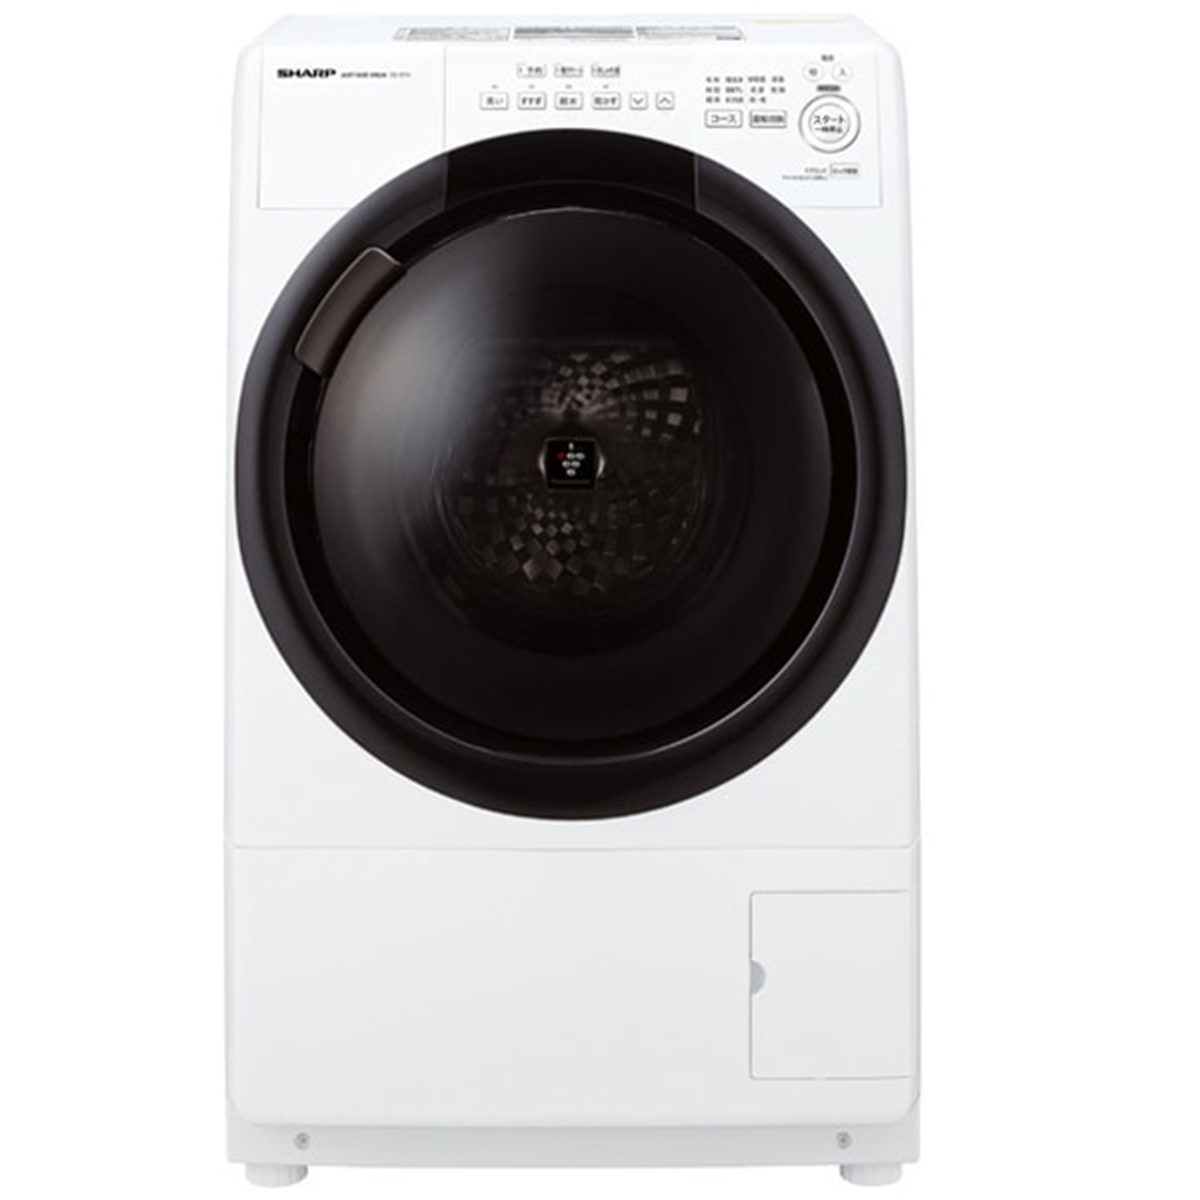 ドラム式洗濯機<br>ES-S7H (洗濯・脱水7kg、乾燥3.5kg)